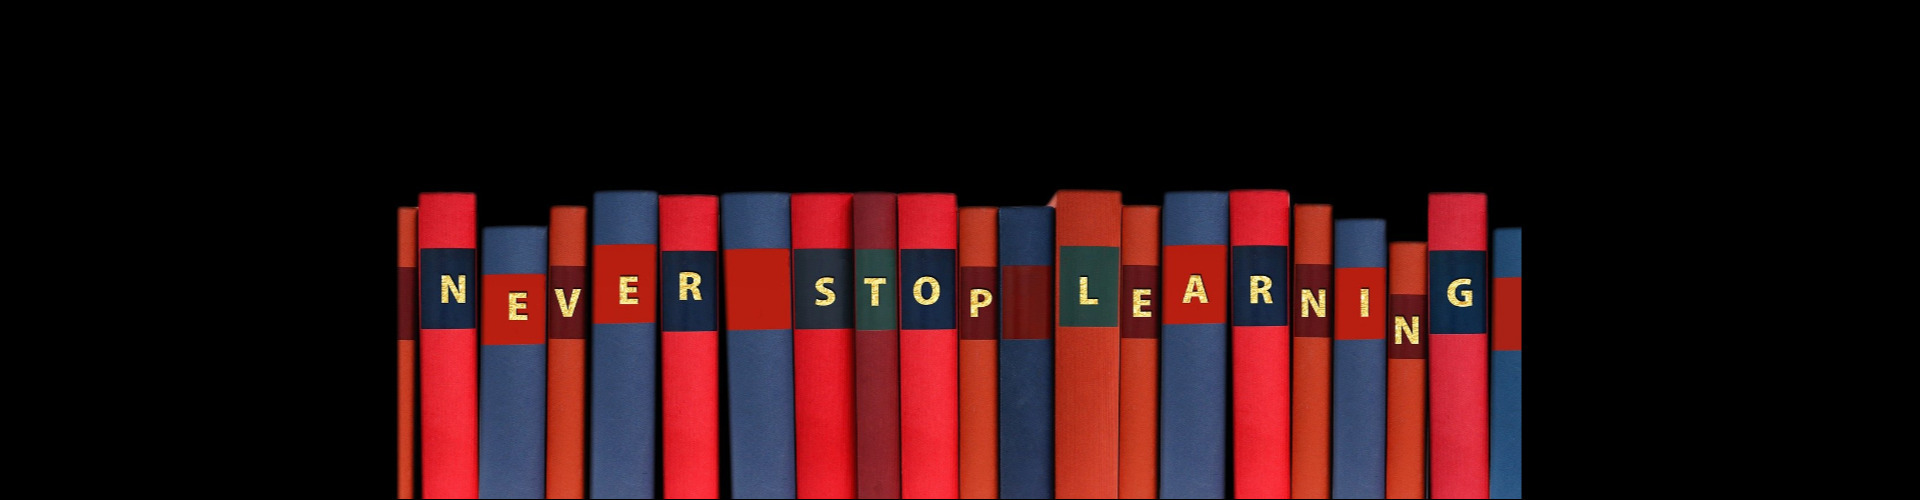 Bunte Buchrücken mit der Aufschrift "NEVER STOP LEARNING"